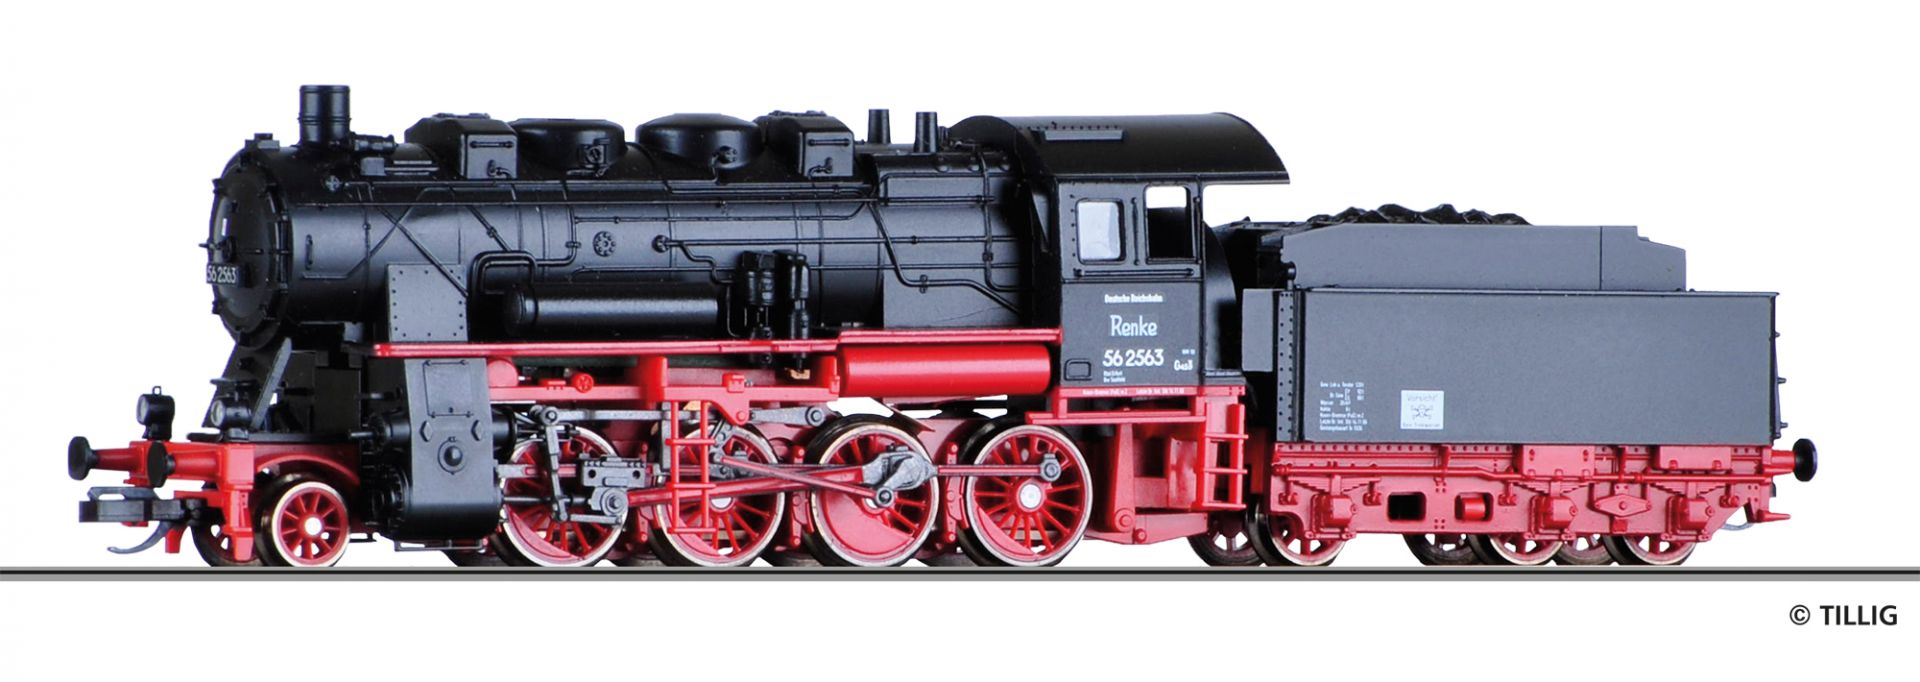 501690 | Dampflokomotive DR -werksseitig ausverkauft-